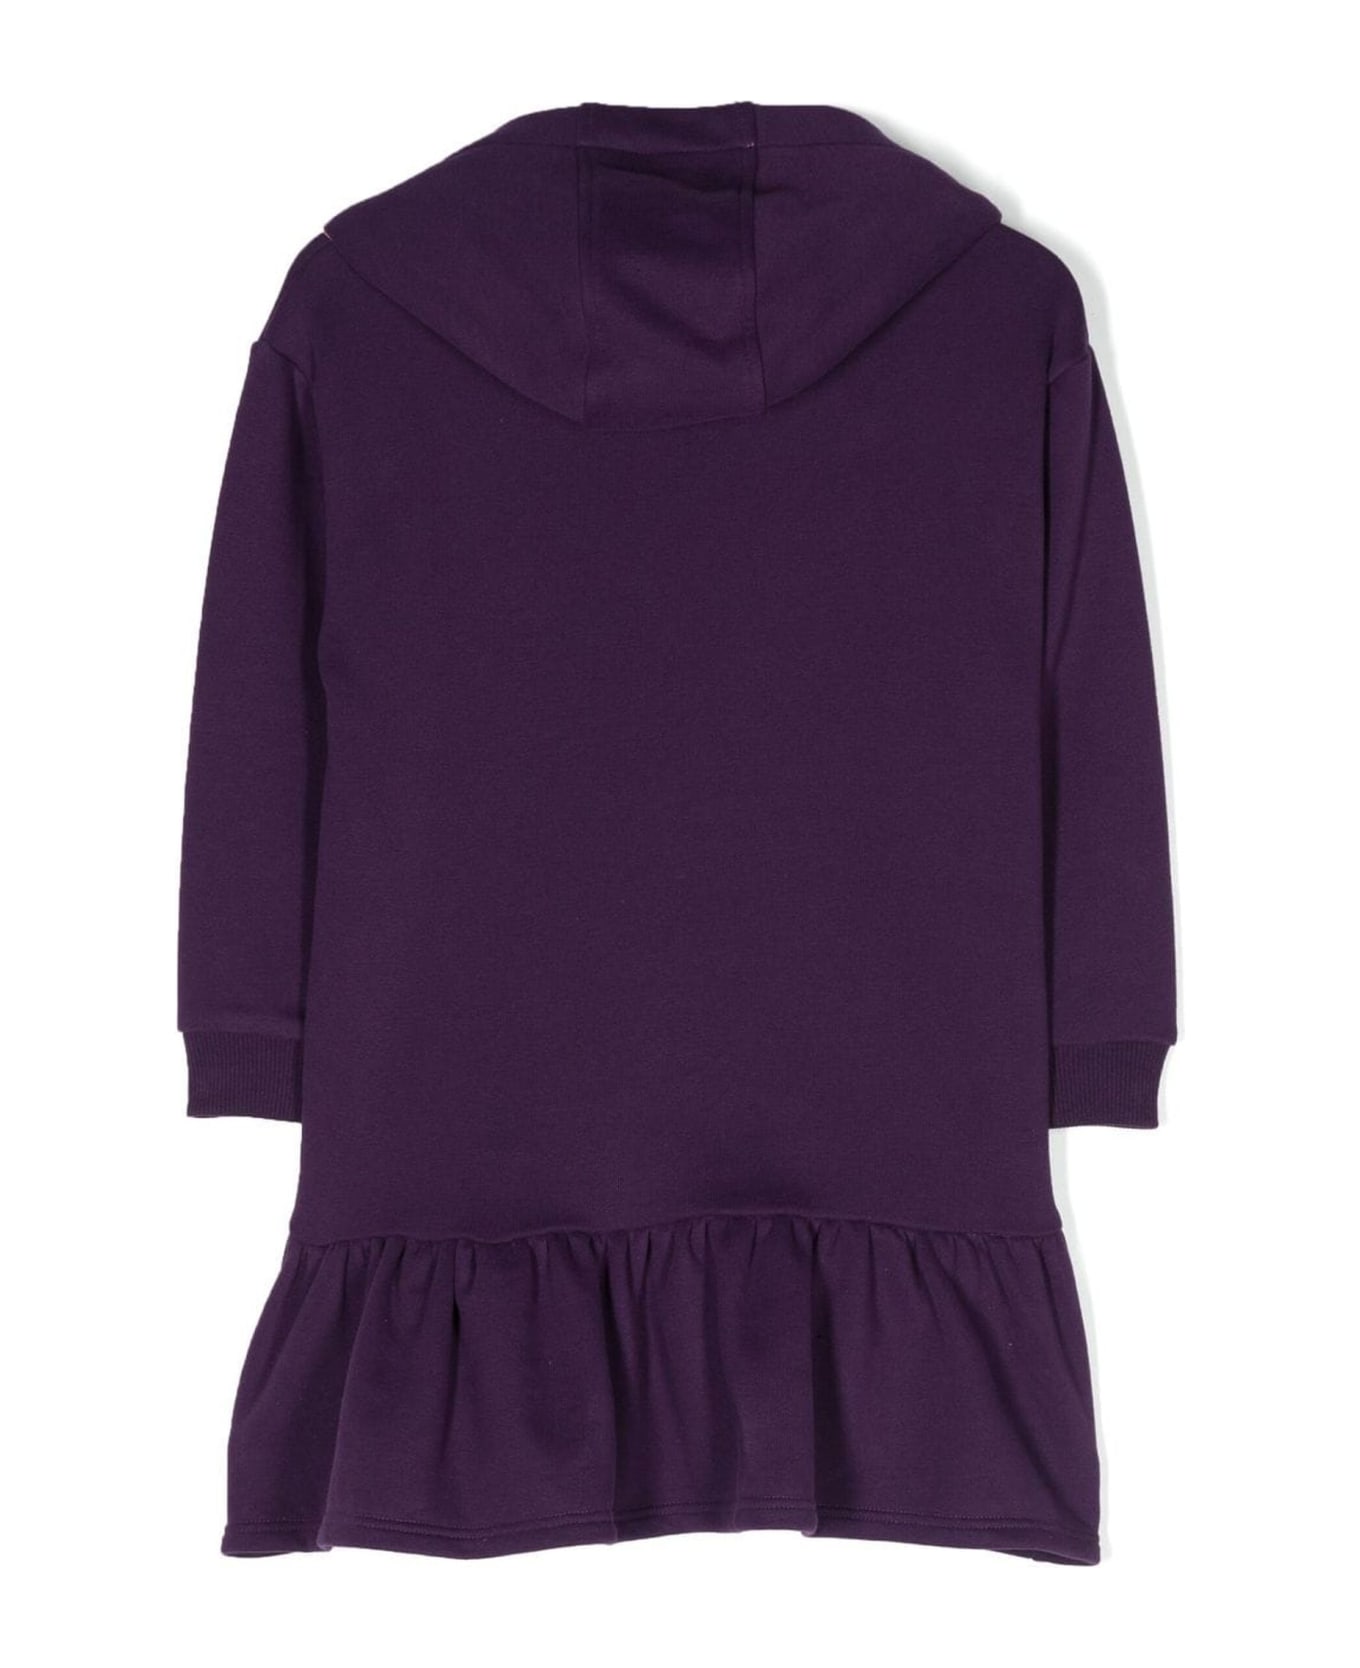 Little Marc Jacobs Purple Cotton Dress - Viola